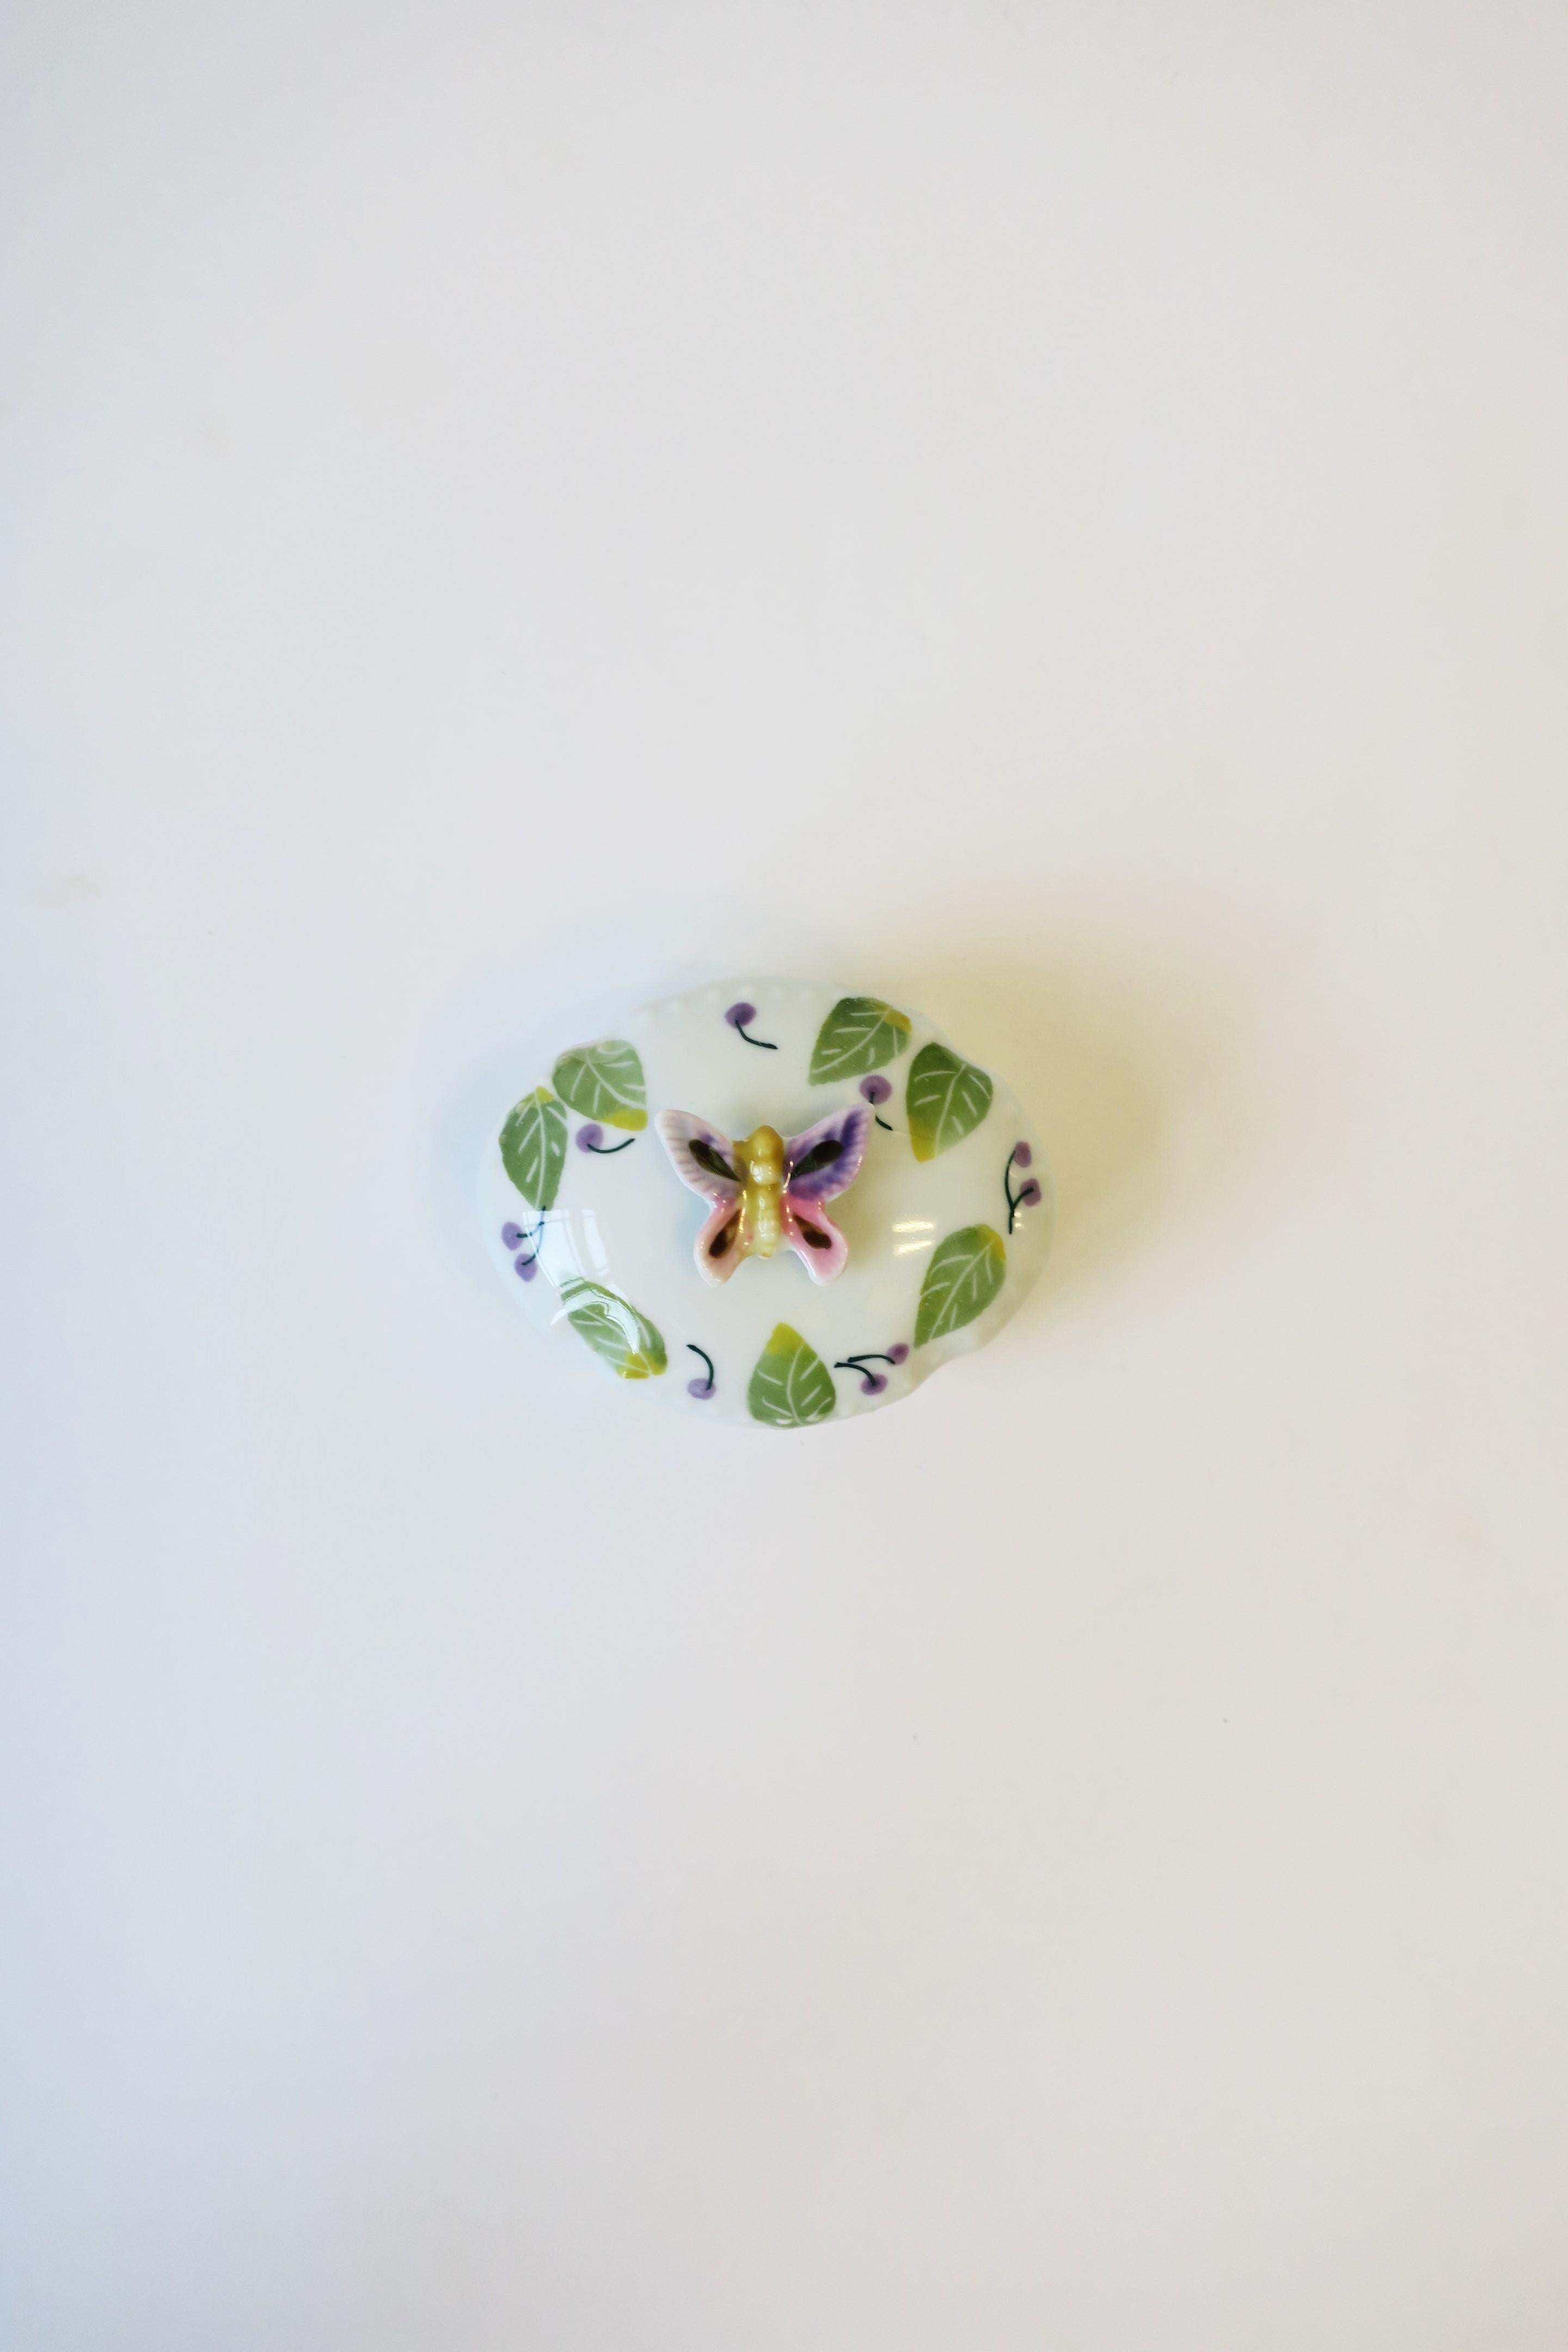 Magnifique petite boîte à bijoux ou à bibelots ovale en porcelaine blanche avec un papillon coloré, des feuilles et des cerises, vers le milieu ou la fin du 20e siècle. Le couvercle est doté d'un bouton papillon en relief ; il s'ouvre facilement